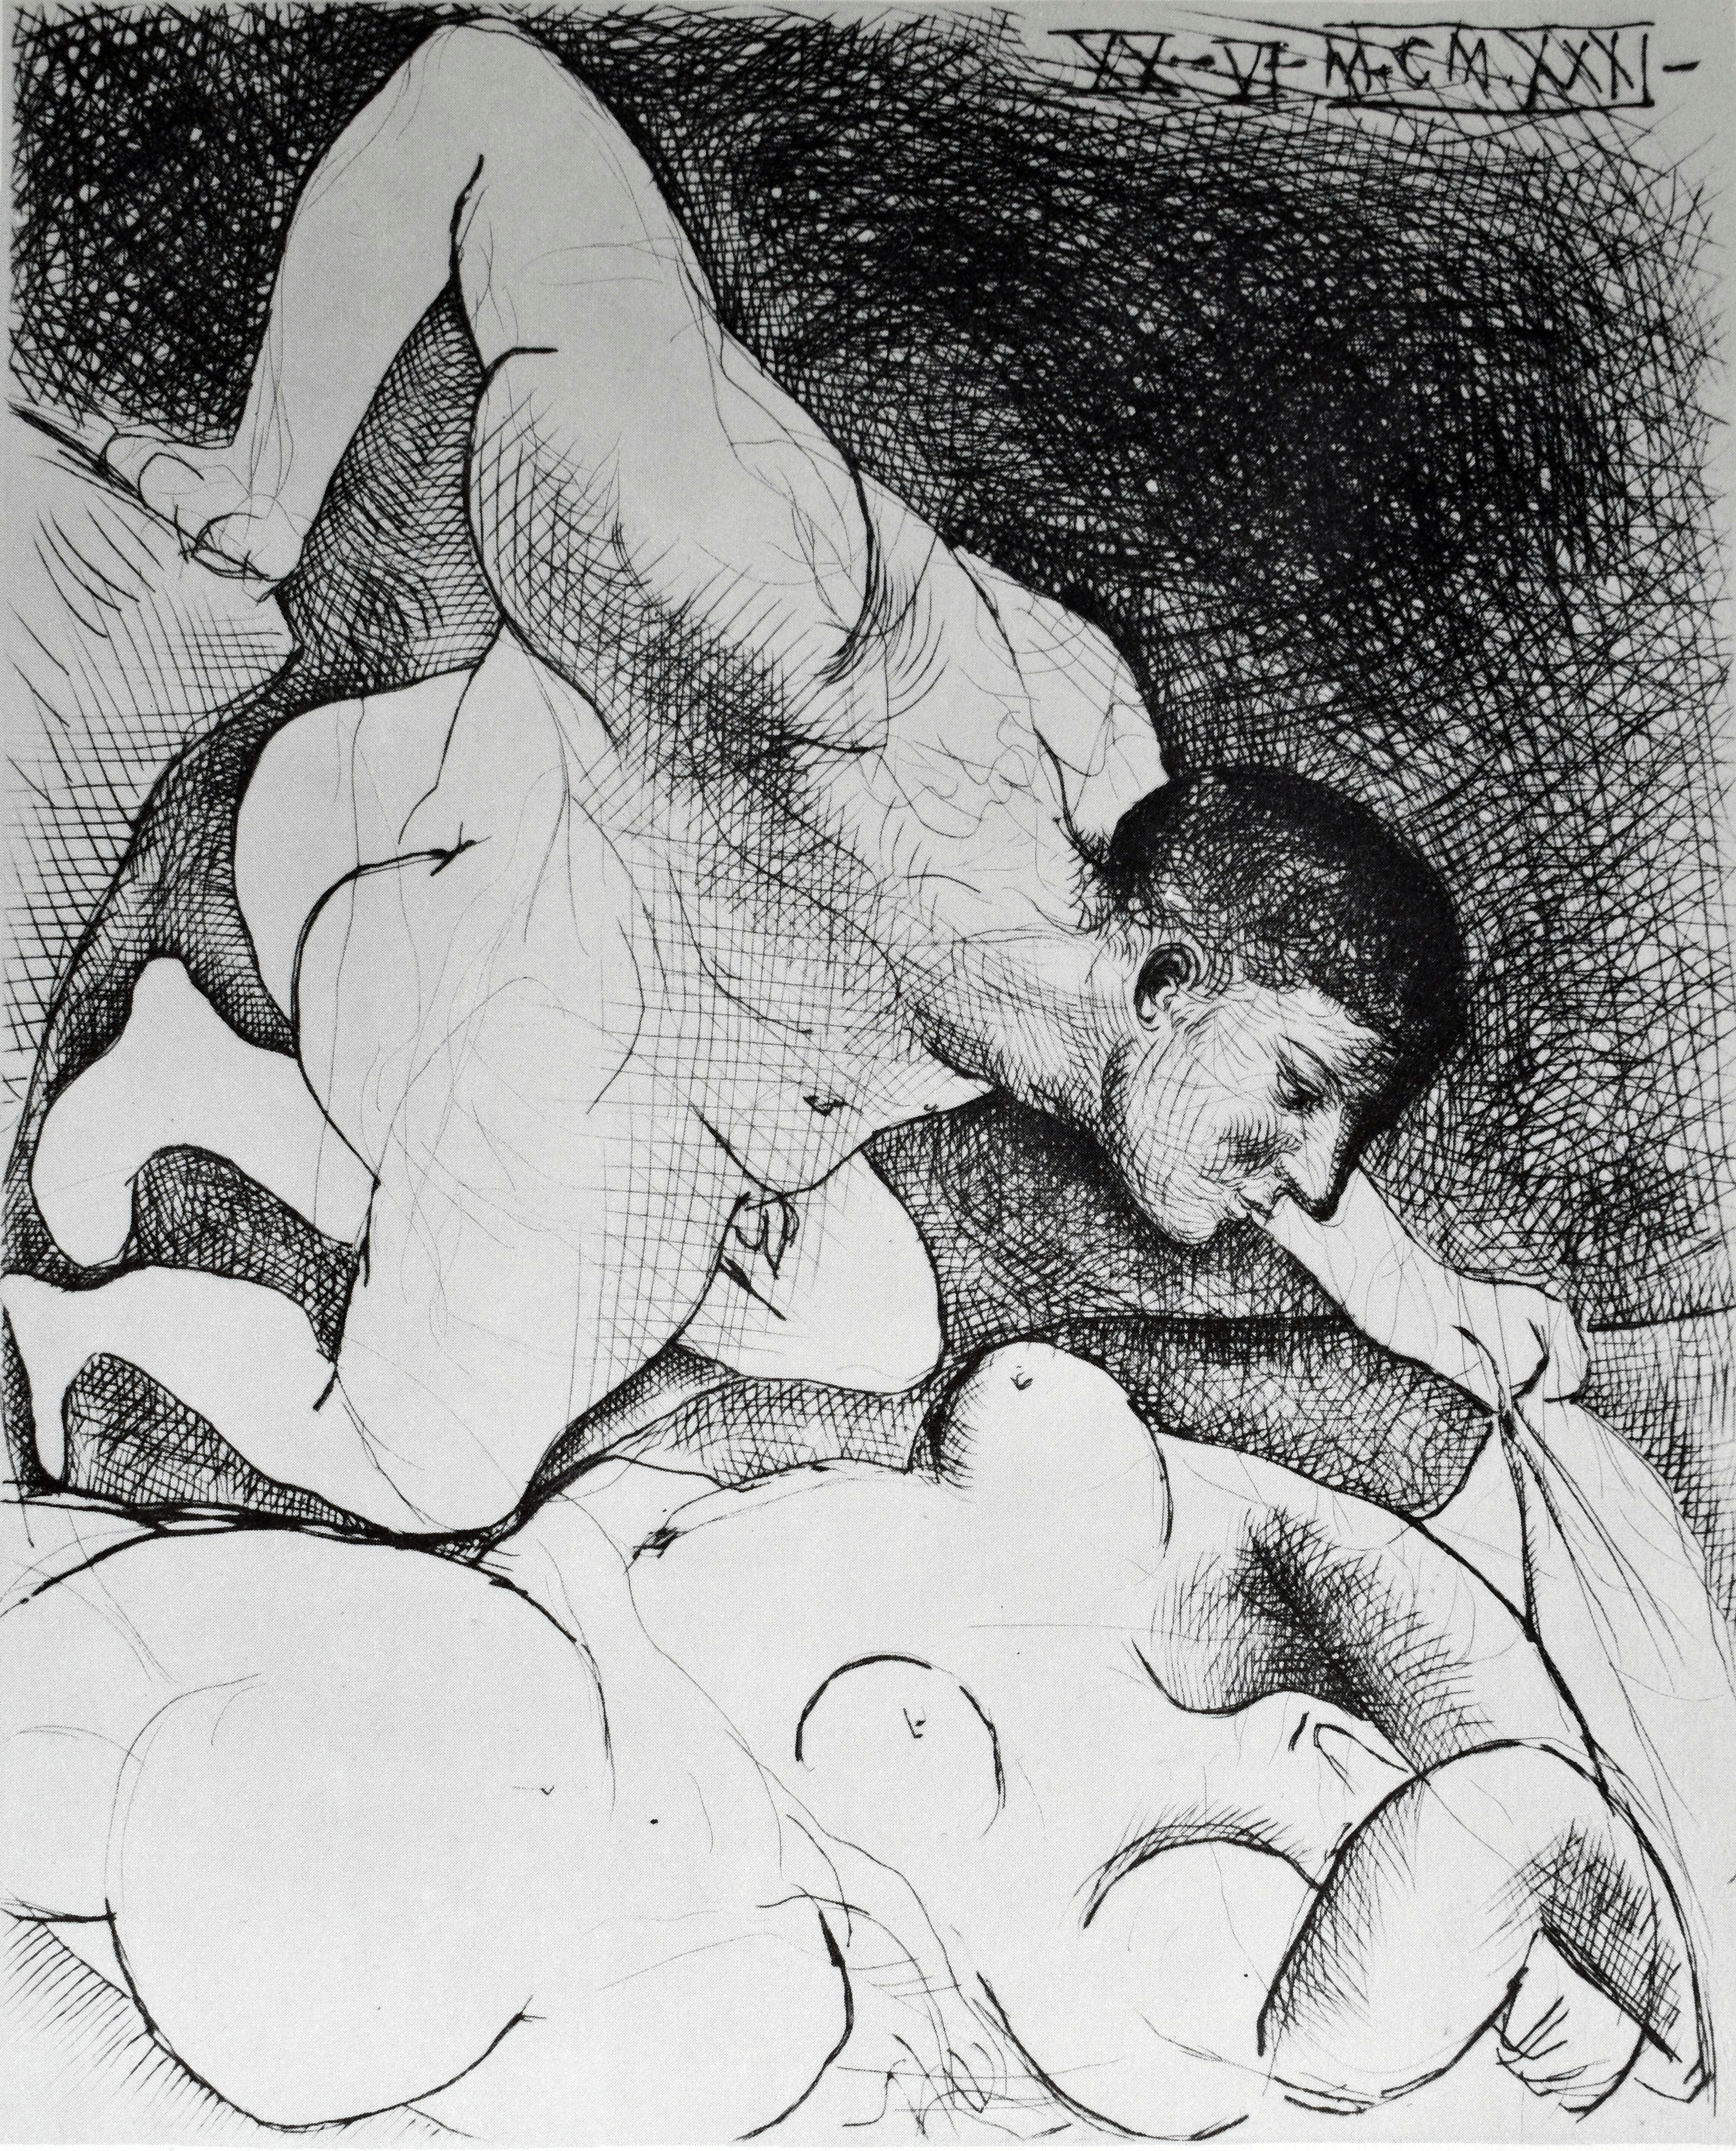 Pablo PICASSO. Suite Vollard 5. Edición Hatje, 1956. Litografía